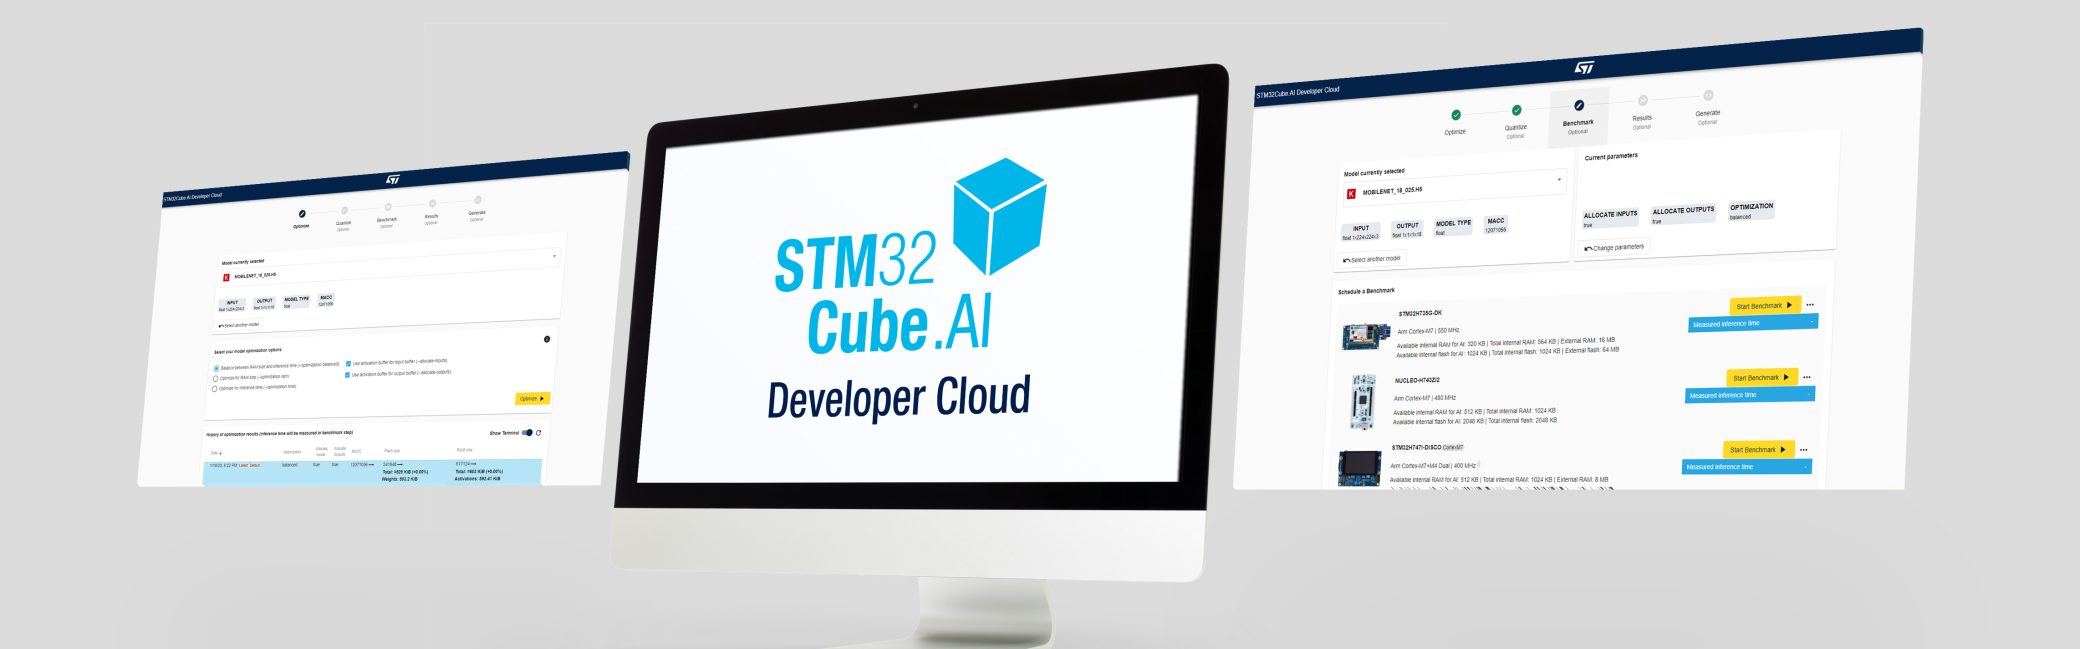 STM32Cube.AI Developer Cloud